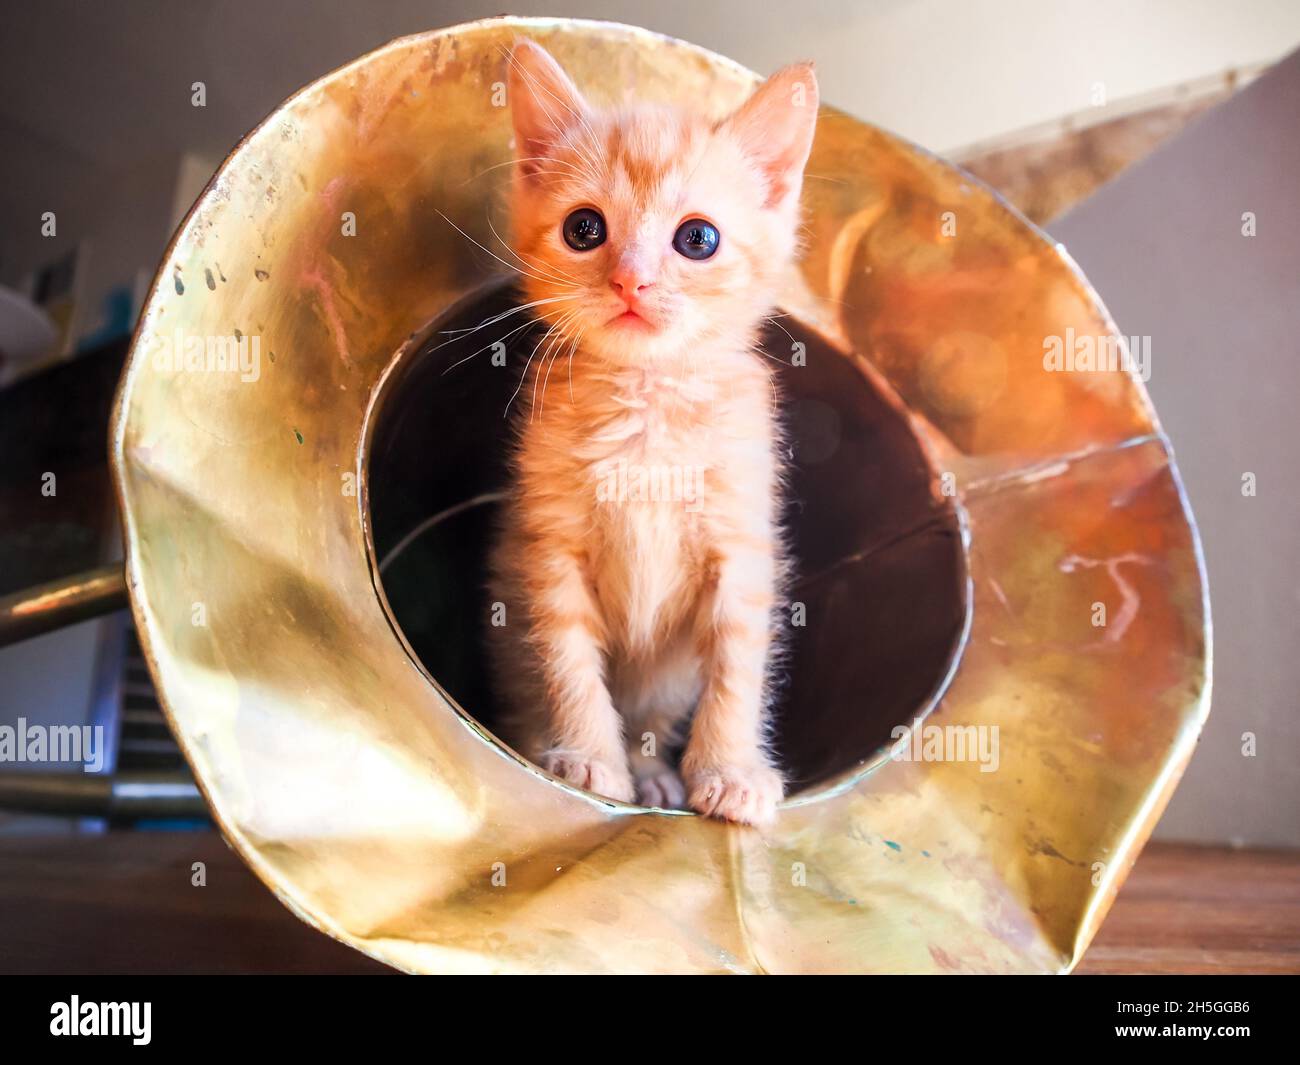 Gattino in tuba! Tovino arancione che esce dalla campana di un tradizionale strumento in stile tuba fatto a mano in Indonesia Foto Stock